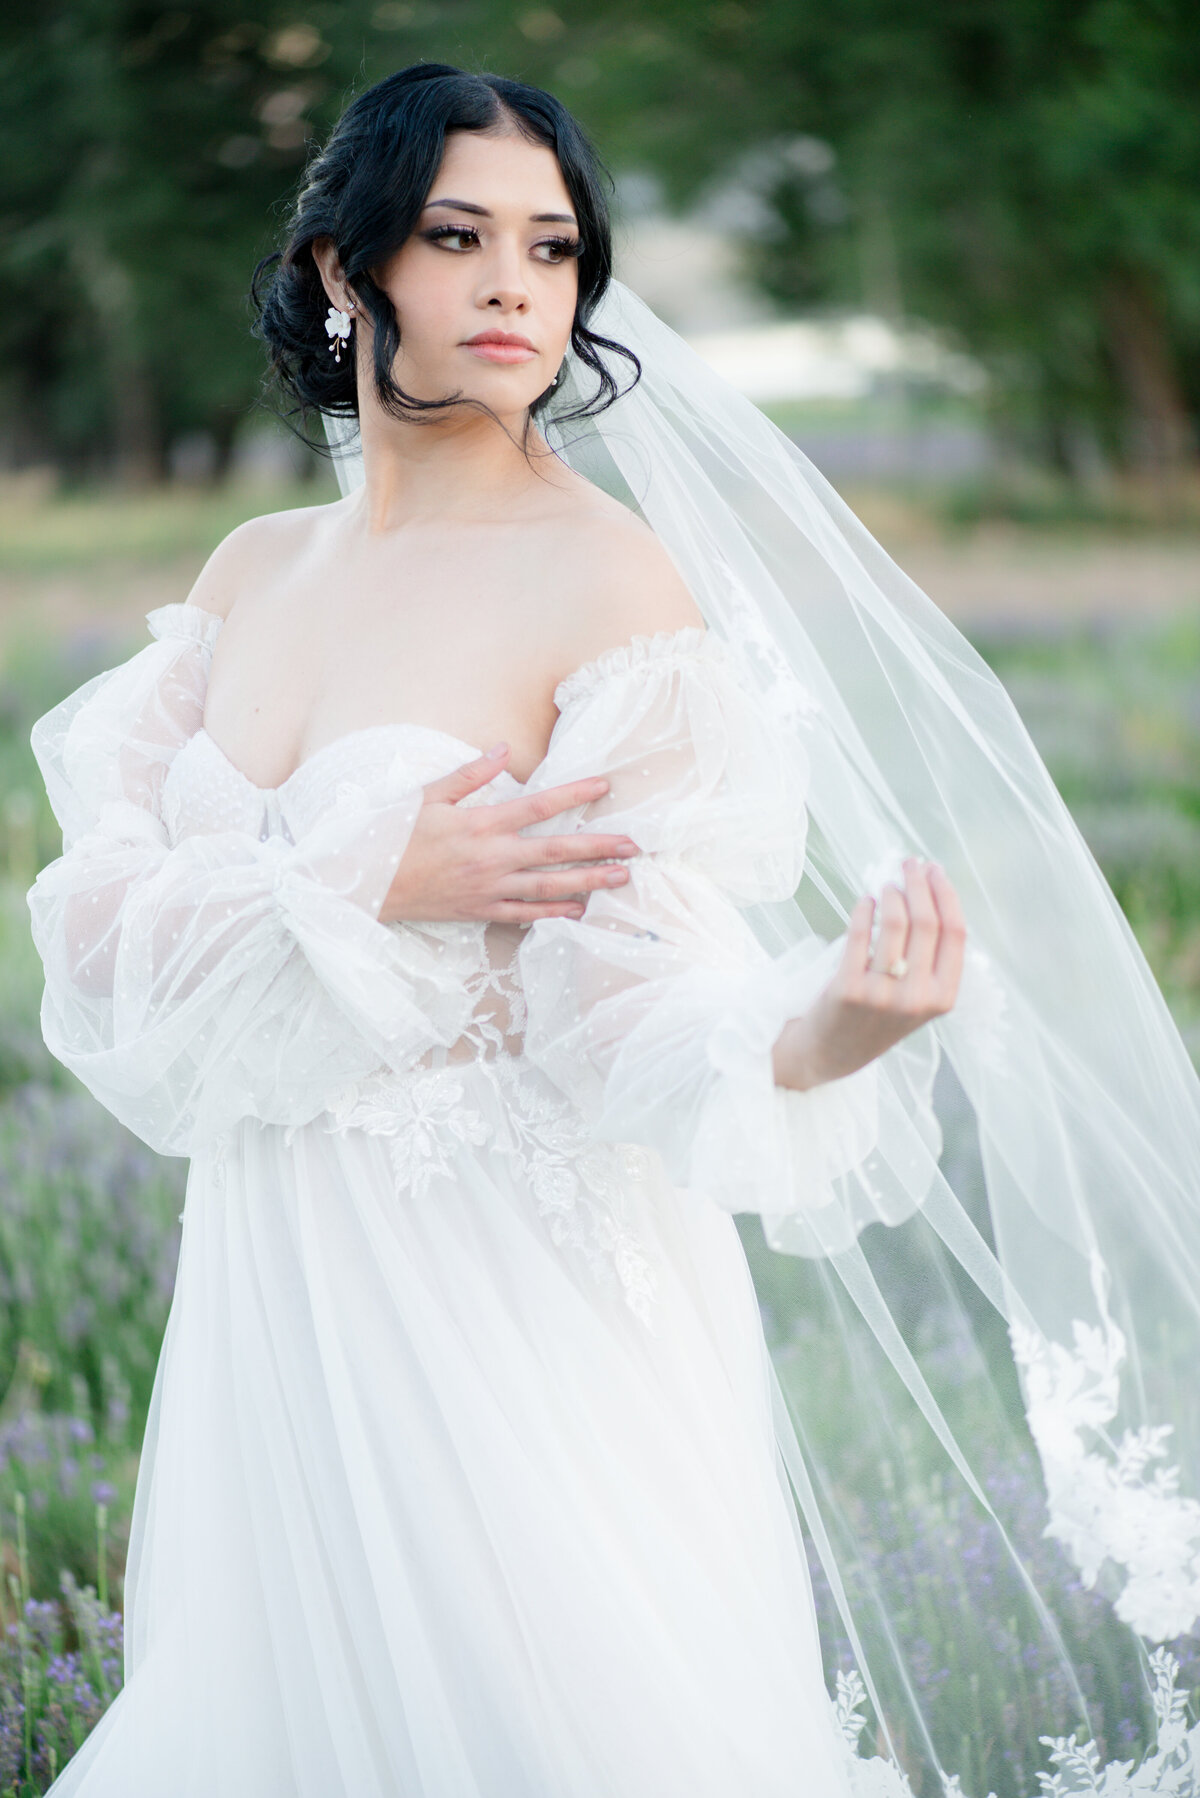 Lavender Fields Wedding - Utah Photographer AlliChelle -97